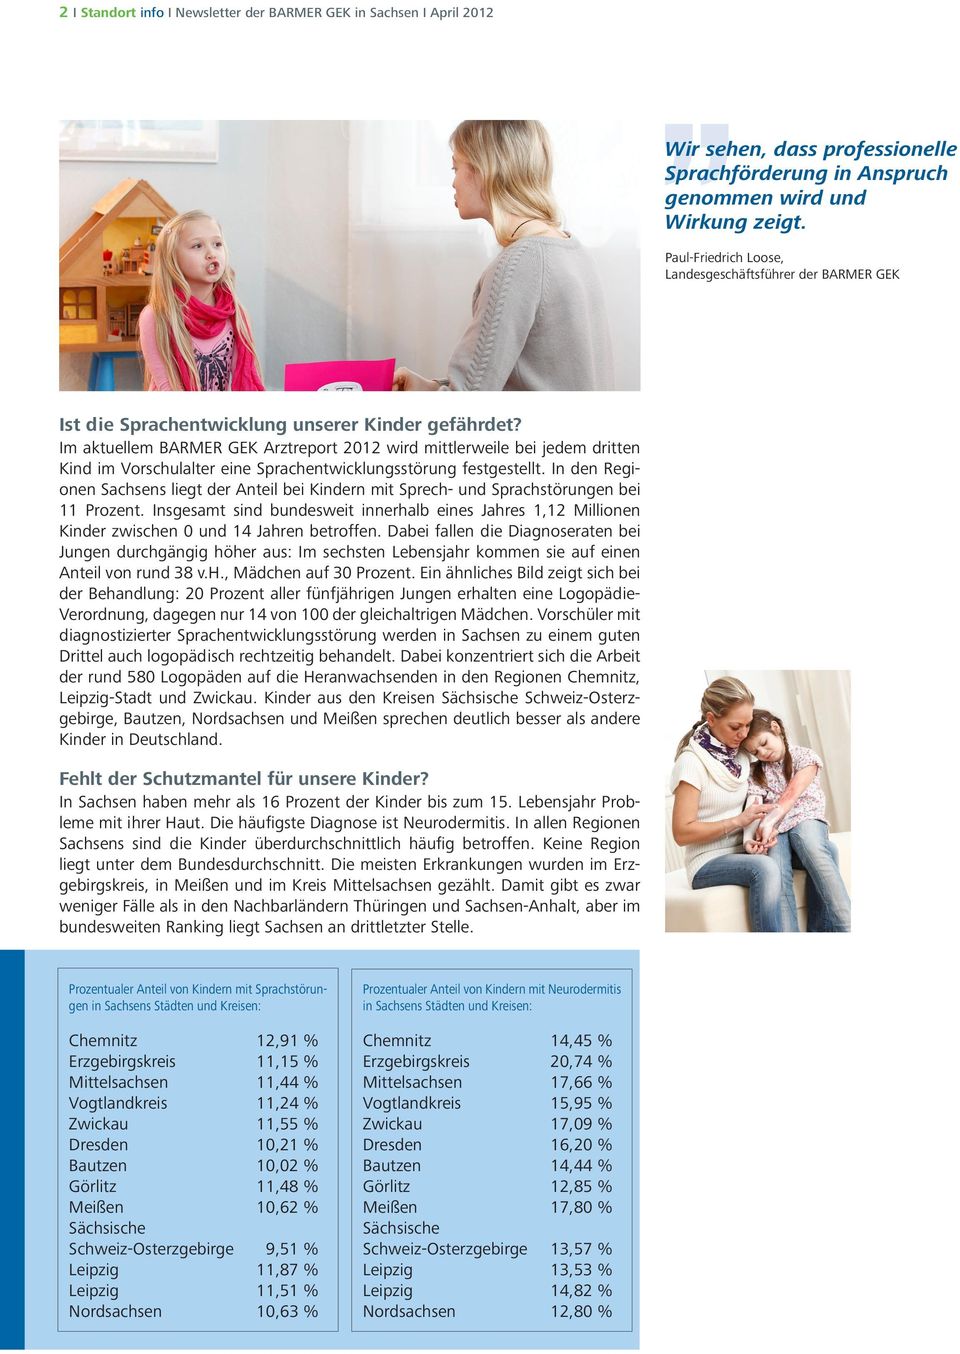 Im aktuellem BARMER GEK Arztreport 2012 wird mittlerweile bei jedem dritten Kind im Vorschulalter eine Sprachentwicklungsstörung festgestellt.